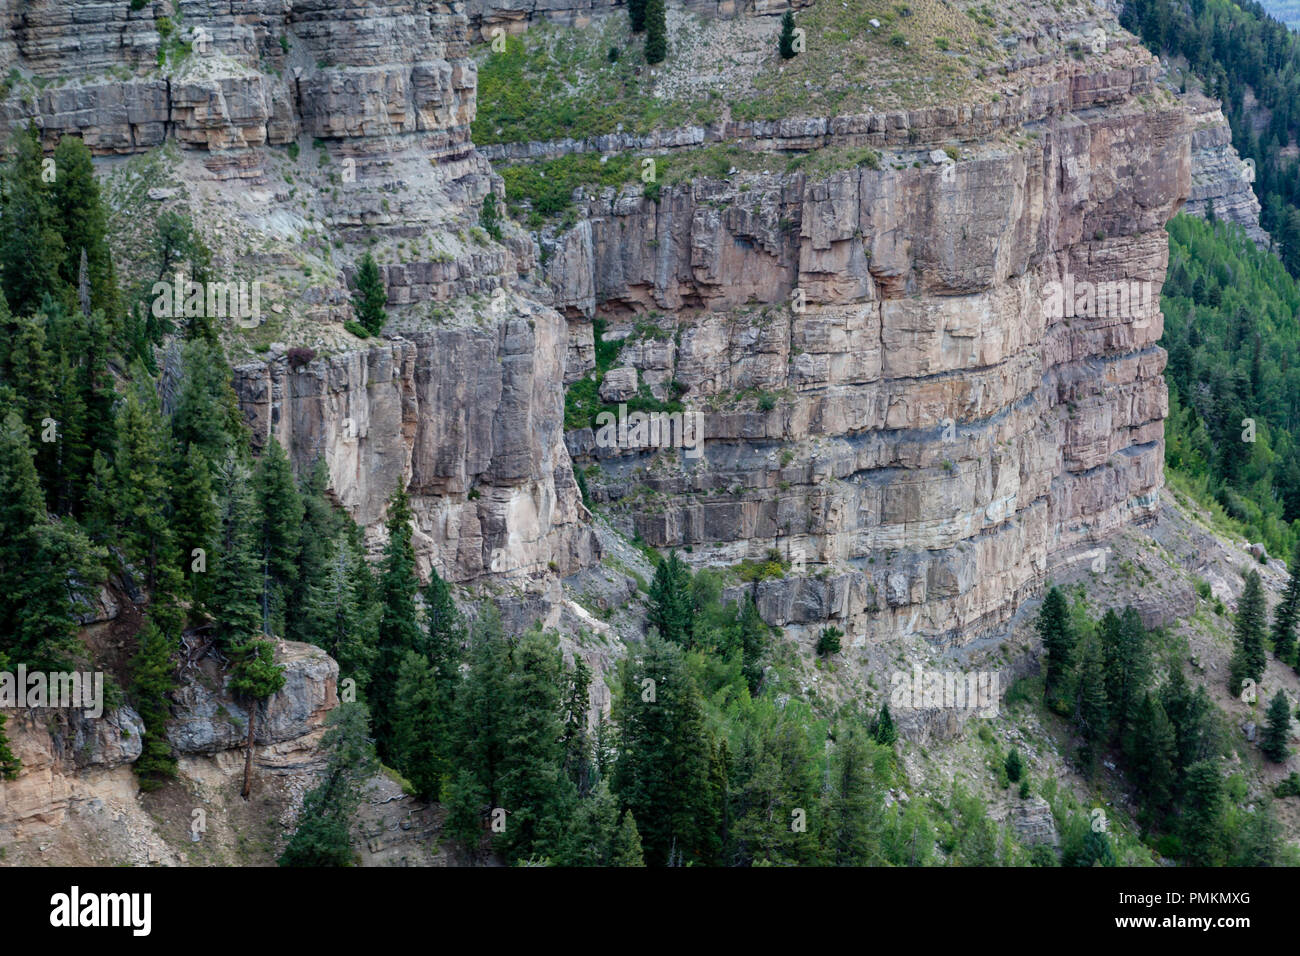 Sedimentären Felsen Wände sind ein reichlich vorhandenes Feature, wo das Colorado Plateau und die felsigen Berge treffen in der nähe von Durango, Co. Stockfoto